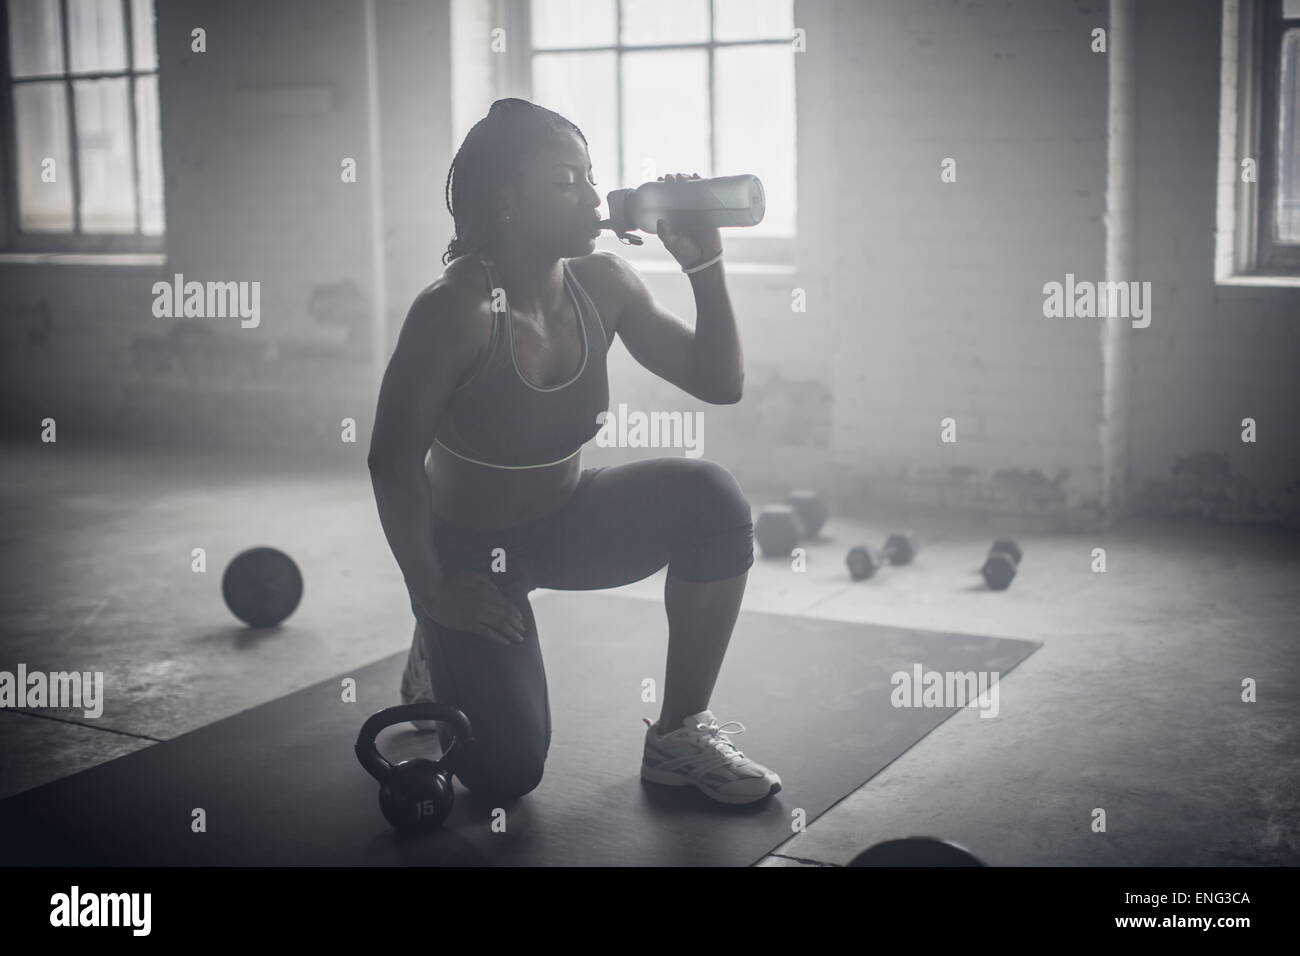 Botella de agua potable de la mujer negra en la oscuridad gimnasio Foto de stock